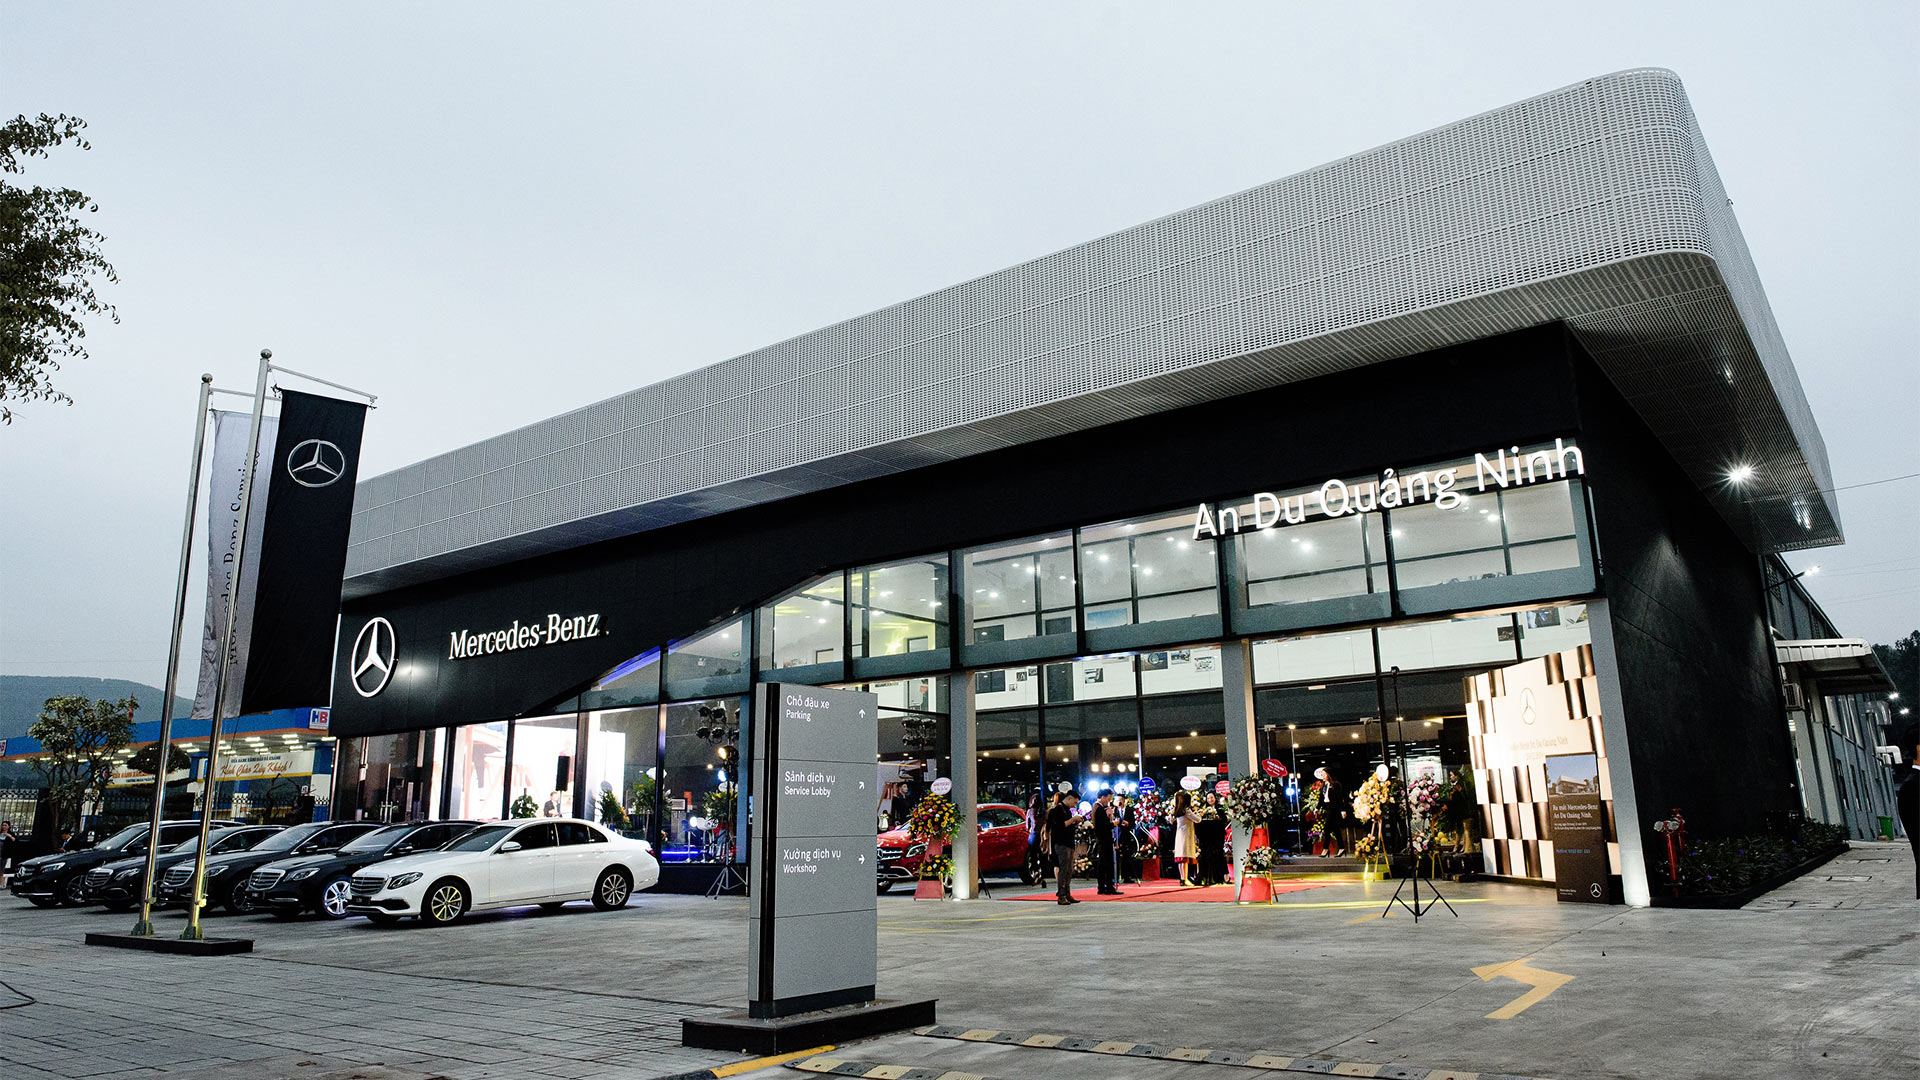 Mercedes-Benz Việt Nam khai trương Xưởng dịch vụ chính hãng An Du Quảng Ninh